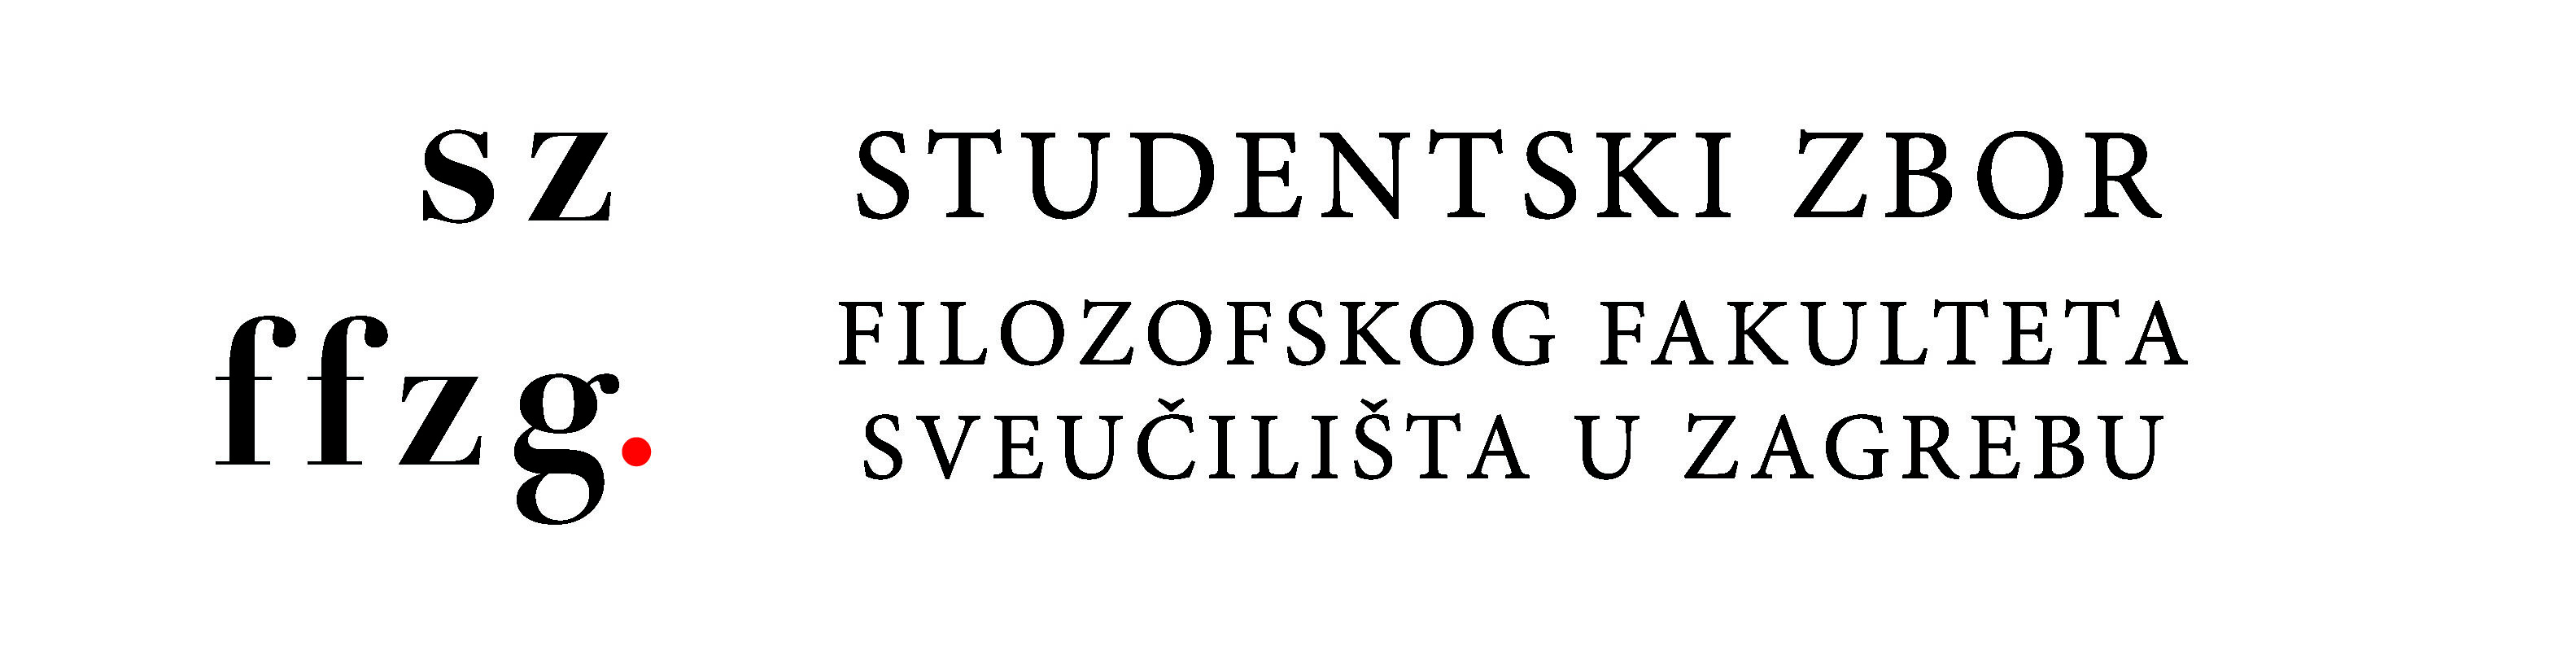 Studentski zbor Filozofskog fakulteta Sveučilišta u Zagrebu